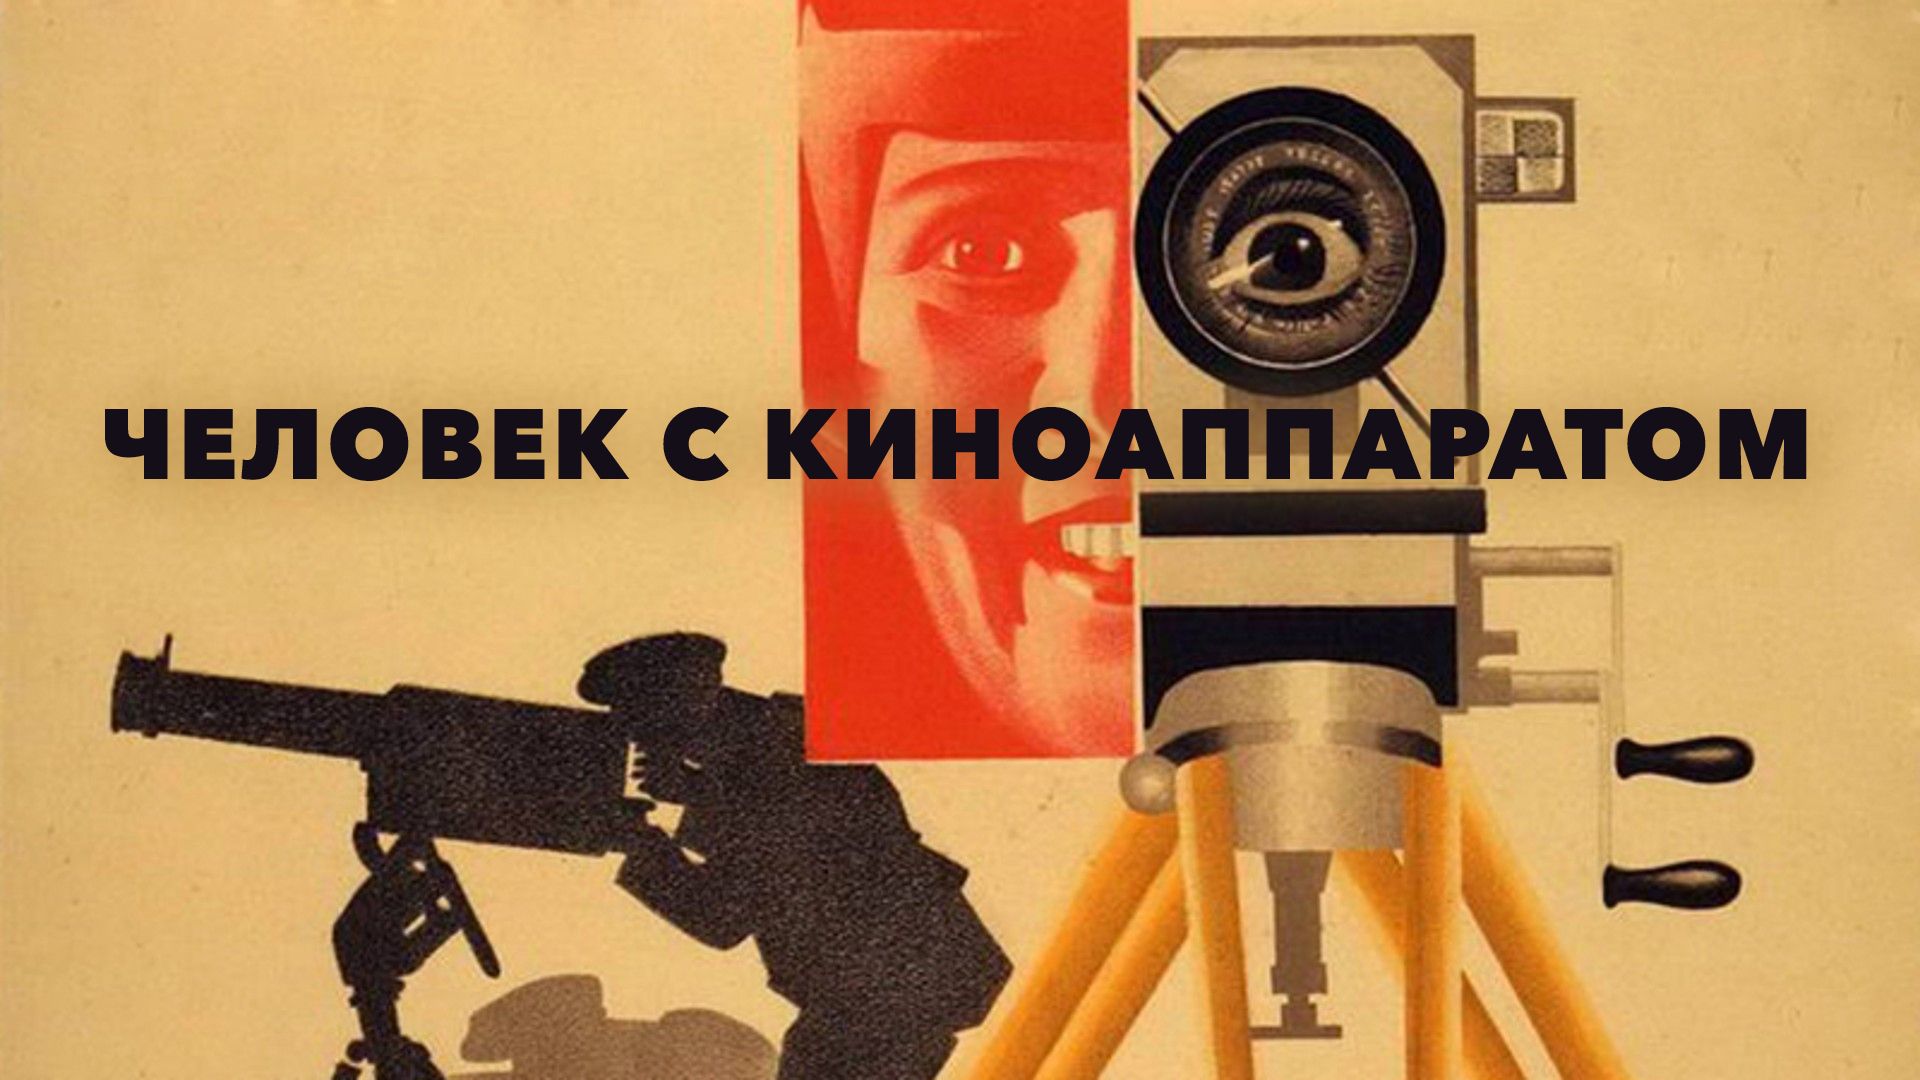 Показ фильма Дзиги Вертова «Человек с киноаппаратом» (1929 г.) с обсуждением